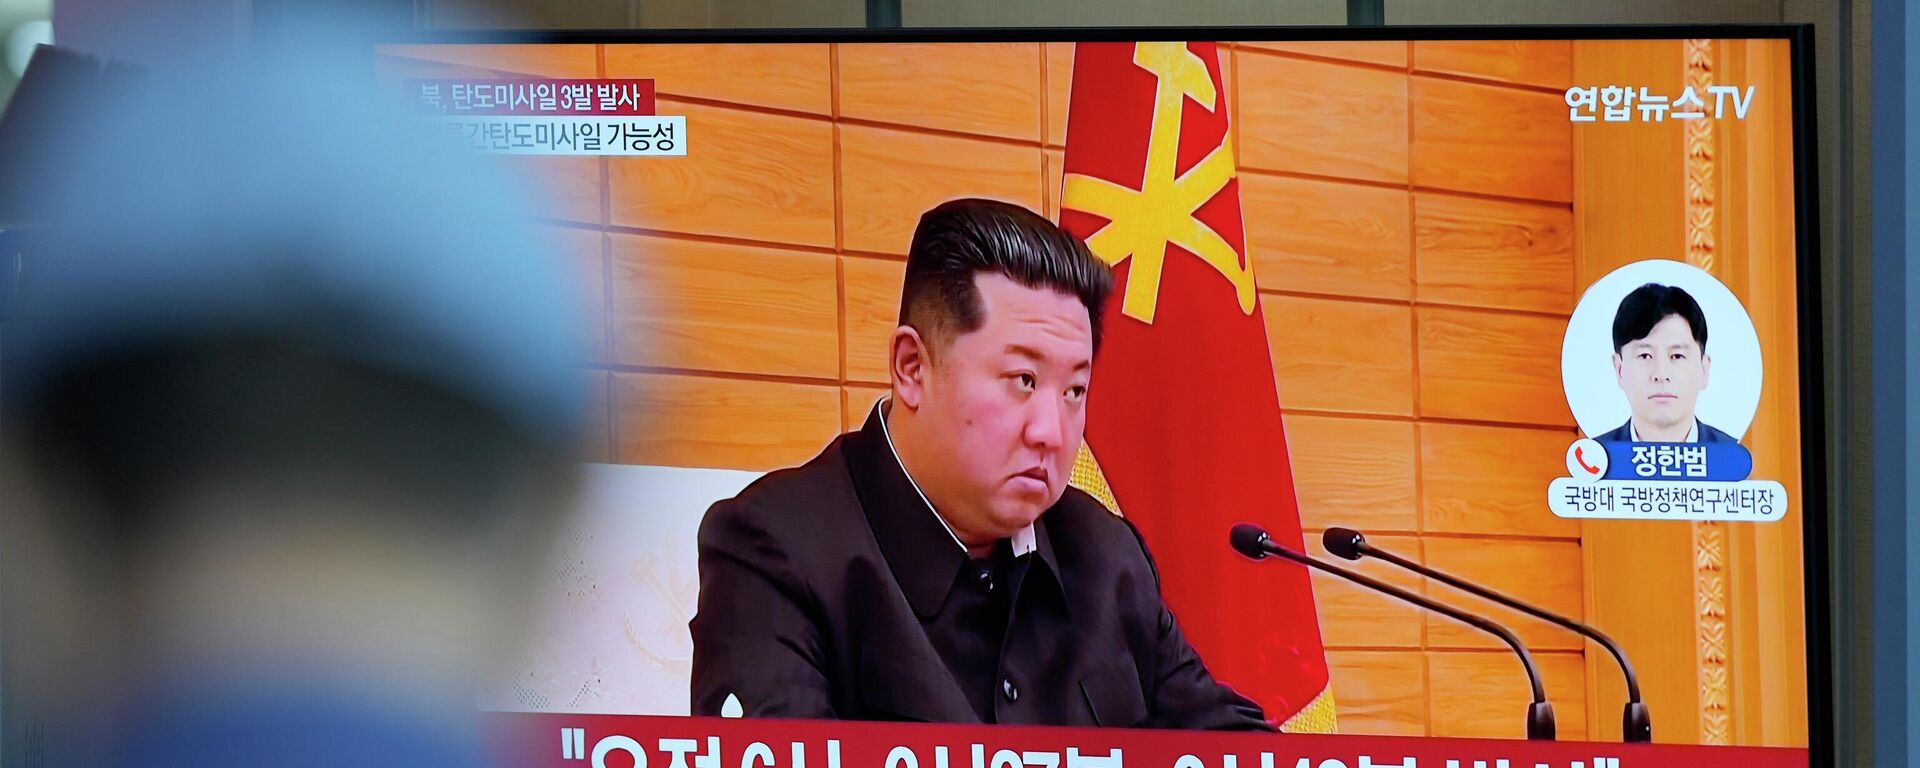 O líder norte-coreano, Kim Jong-un, aparece em uma tela em Seul, na Coreia do Sul, falando sobre o lançamento de um míssil pela Coreia do Norte, em 25 de maio de 2022 - Sputnik Brasil, 1920, 13.07.2022